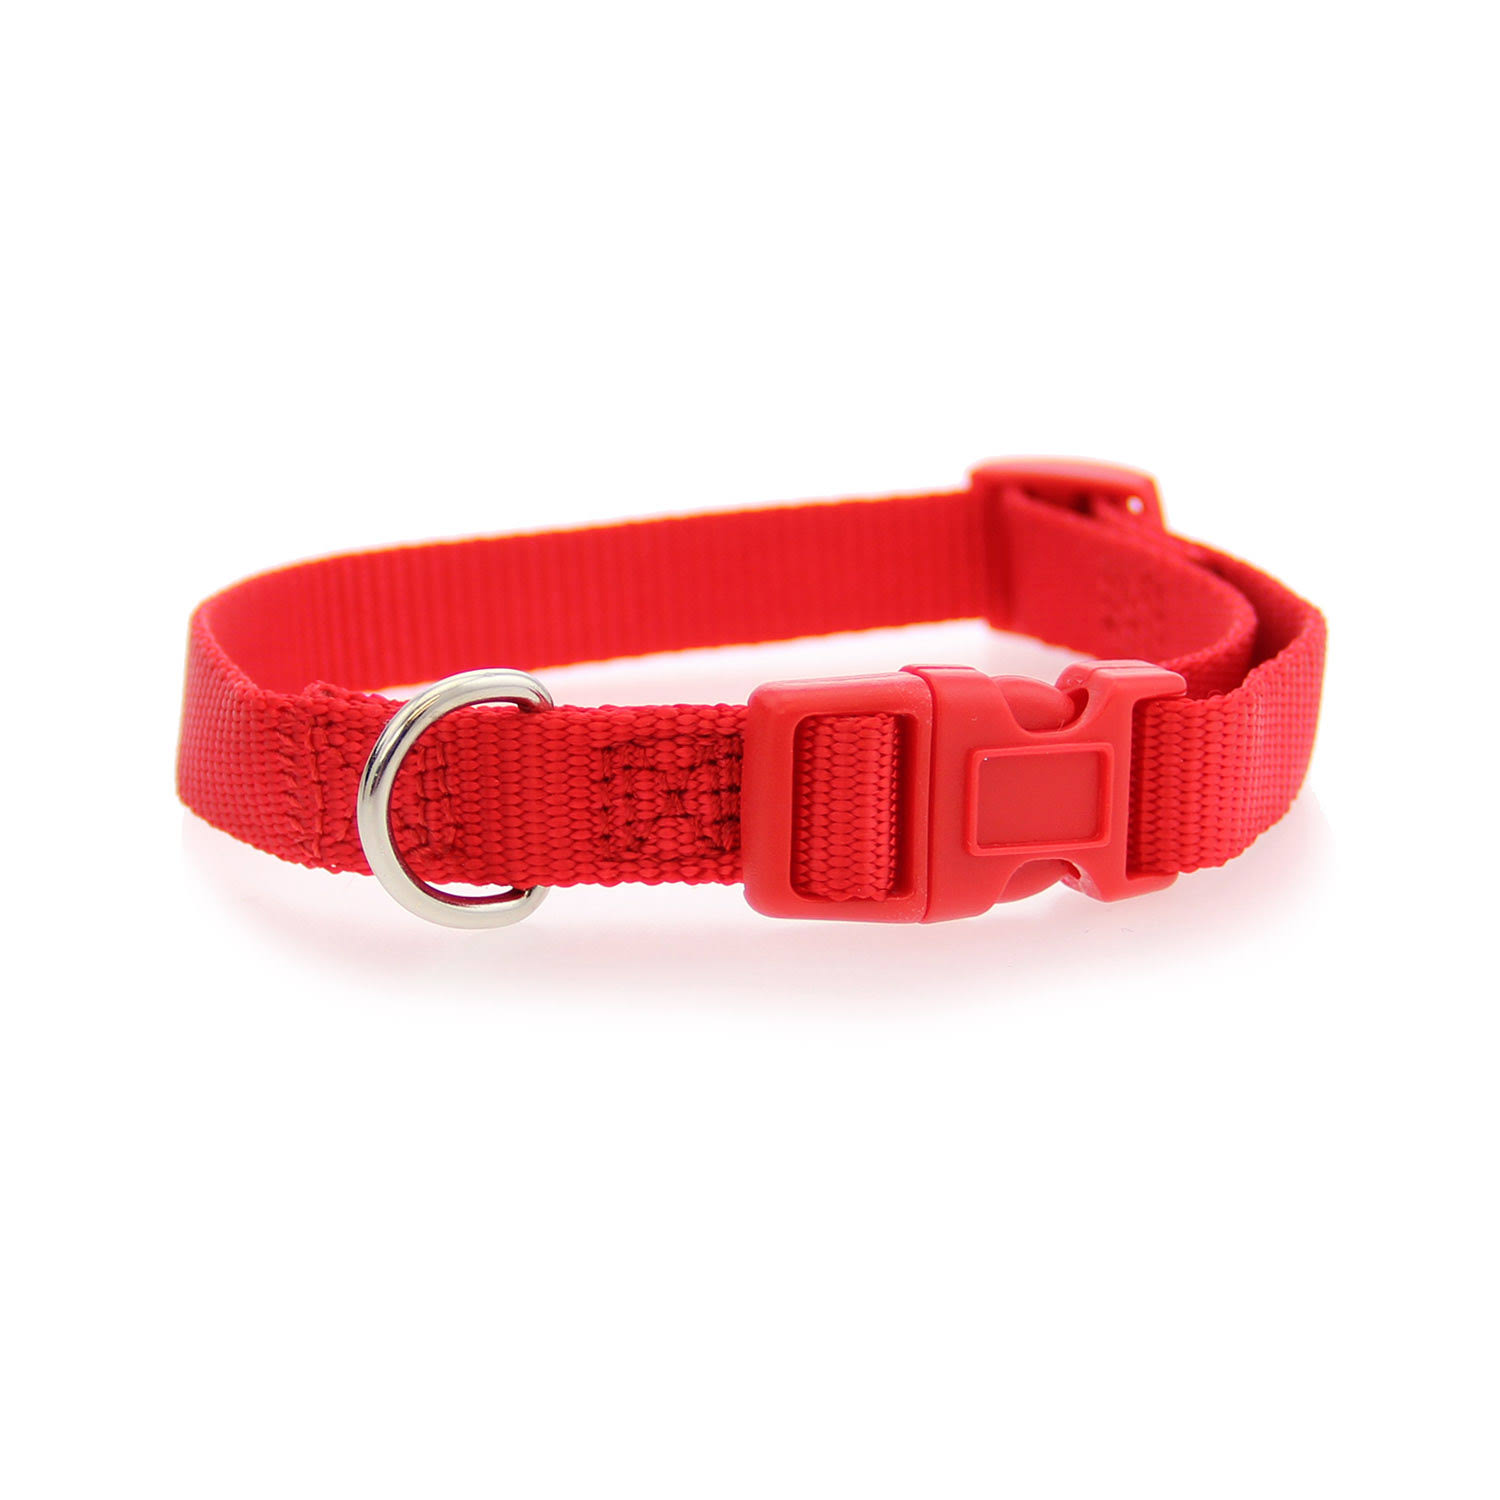 Nylon Dog Collar by Zack & Zoey - Tomato Red